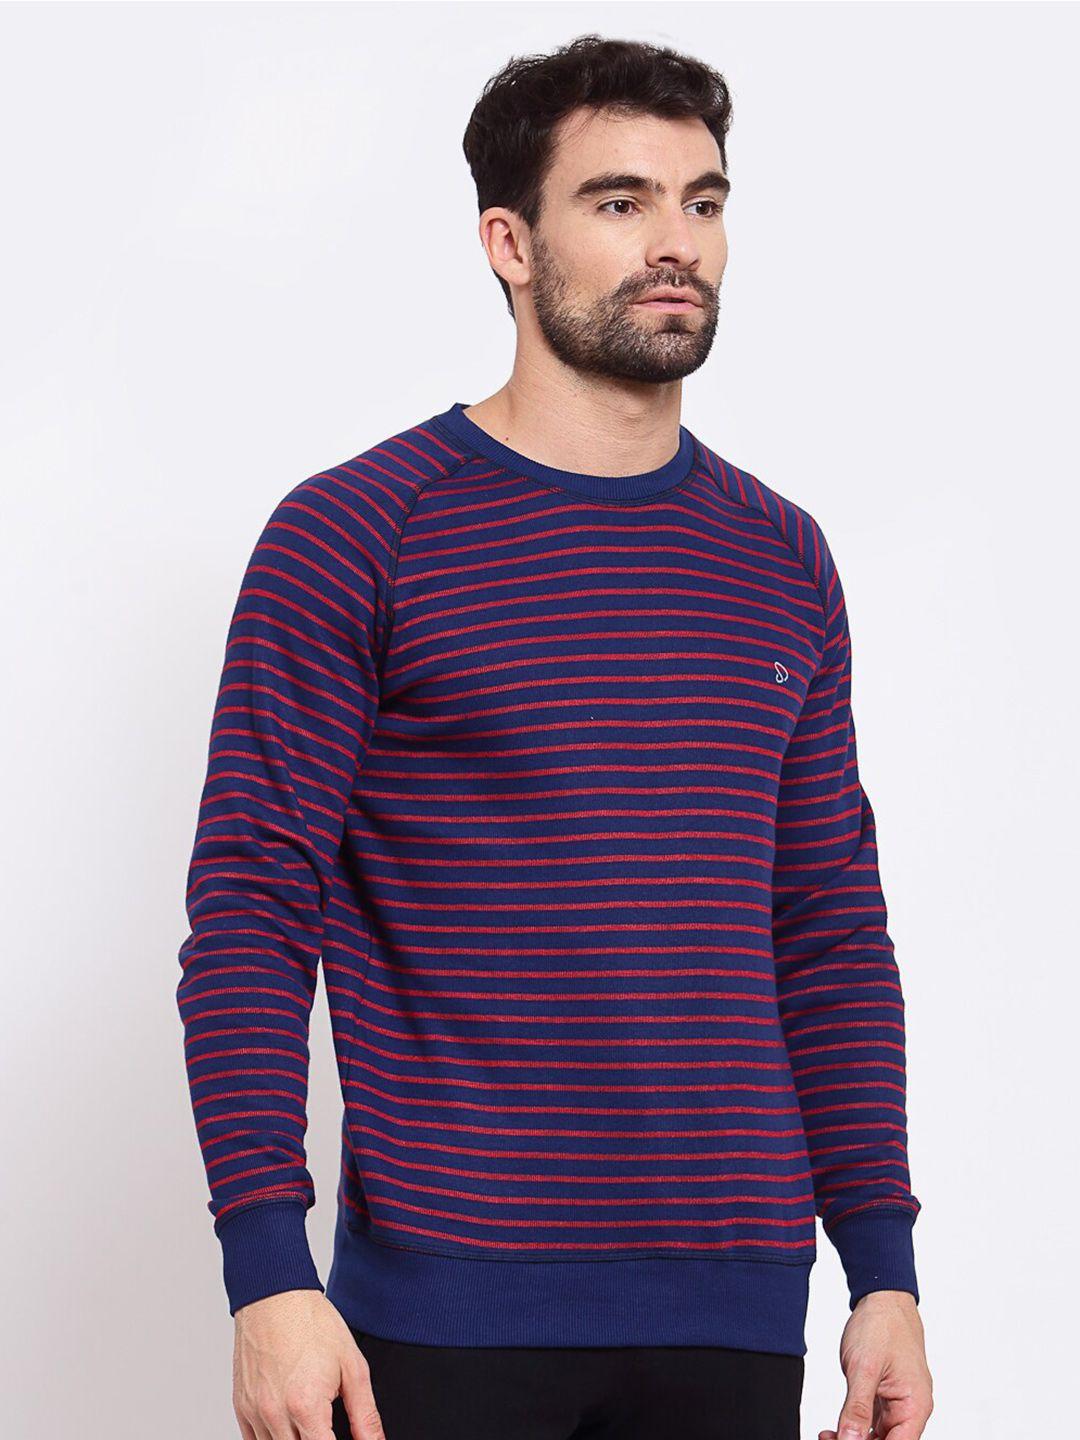 sporto striped cotton pullover sweatshirt